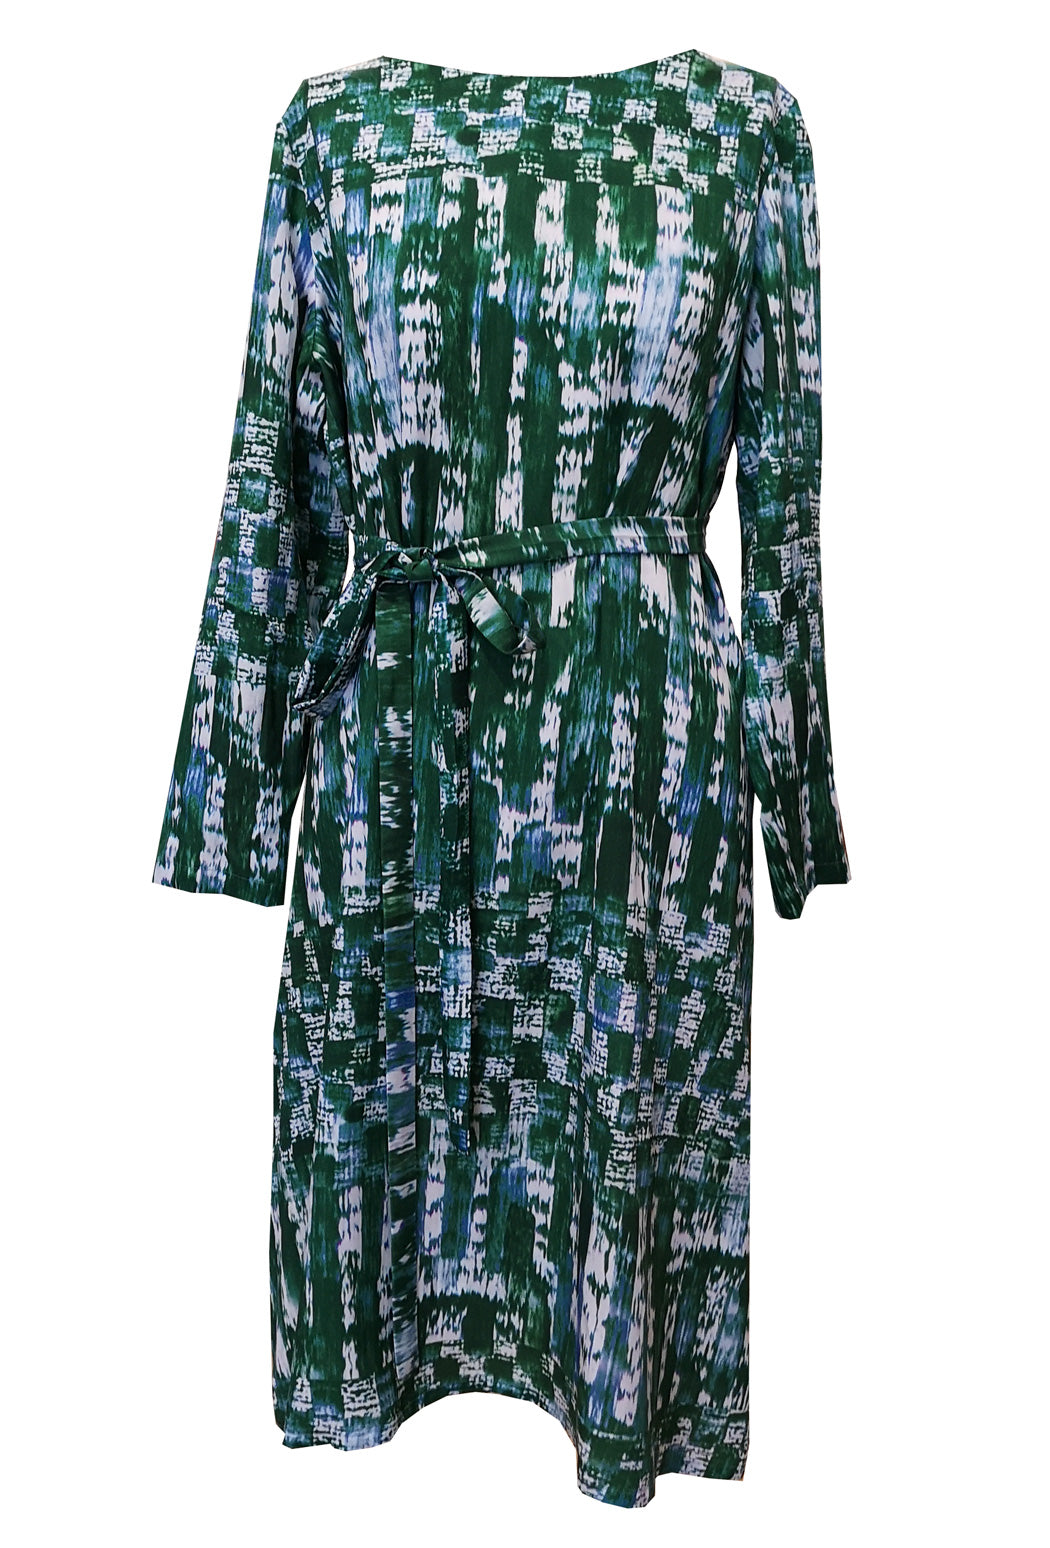 Kleid mit grafischem Muster in grün